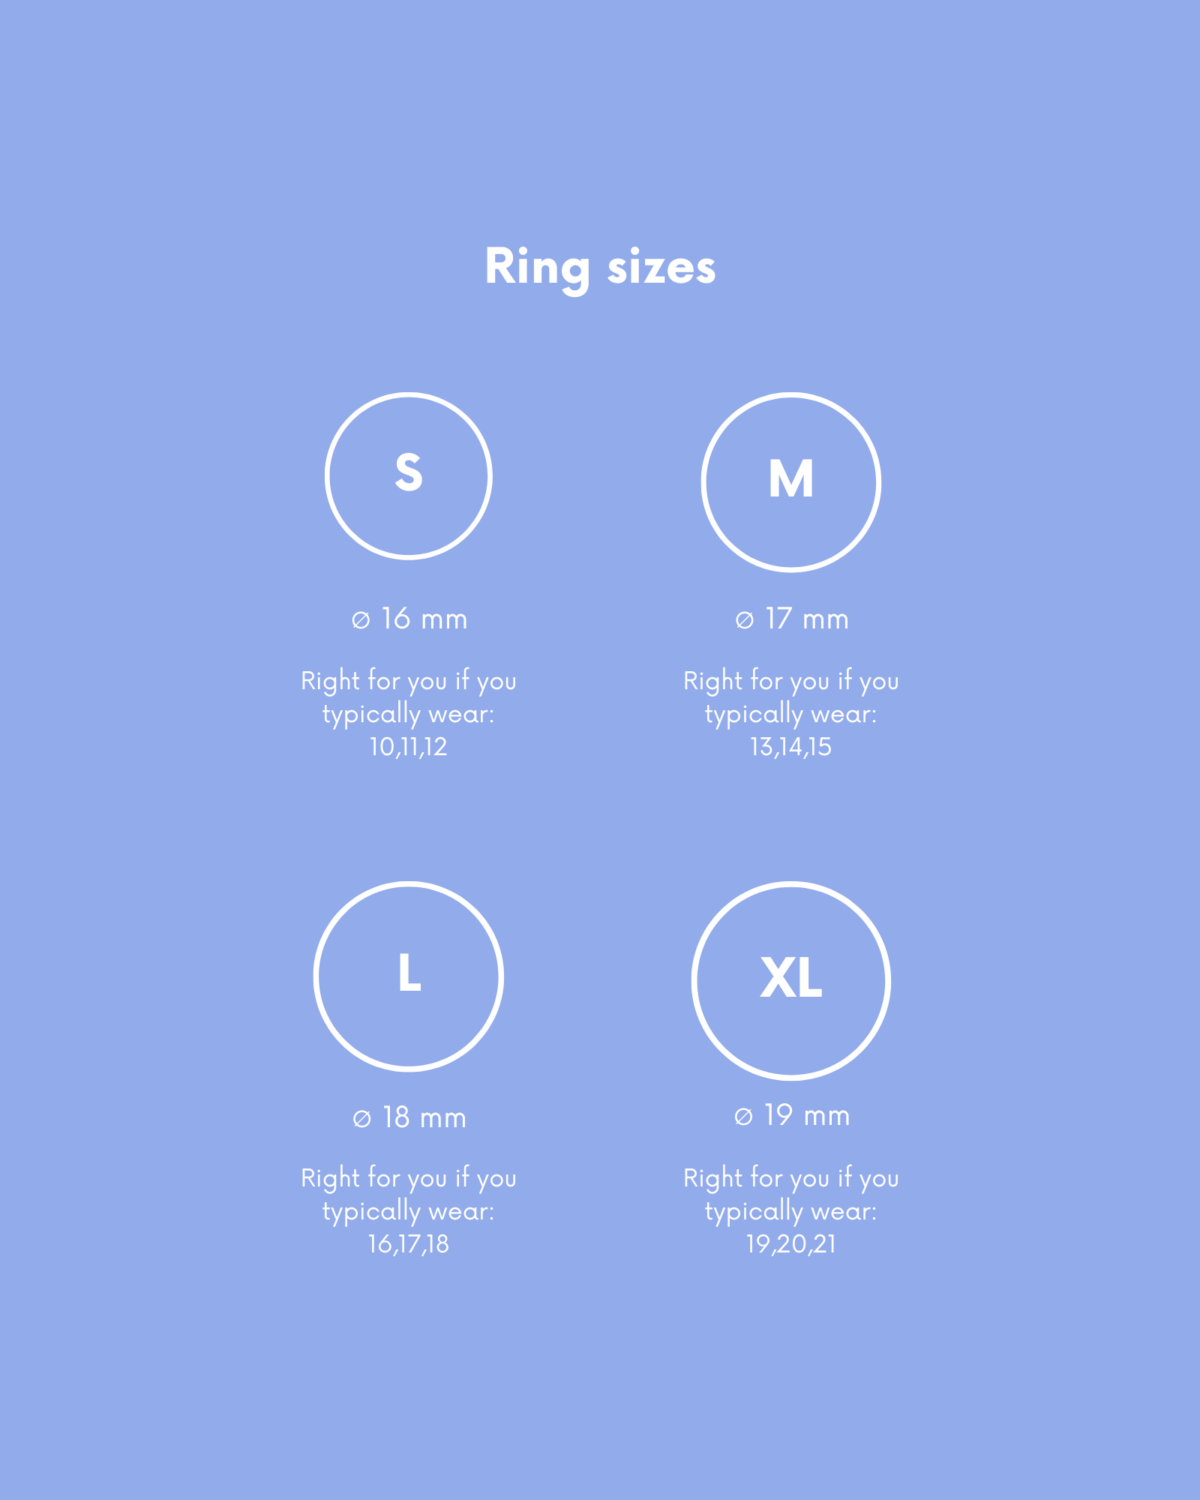 Ring sizes description